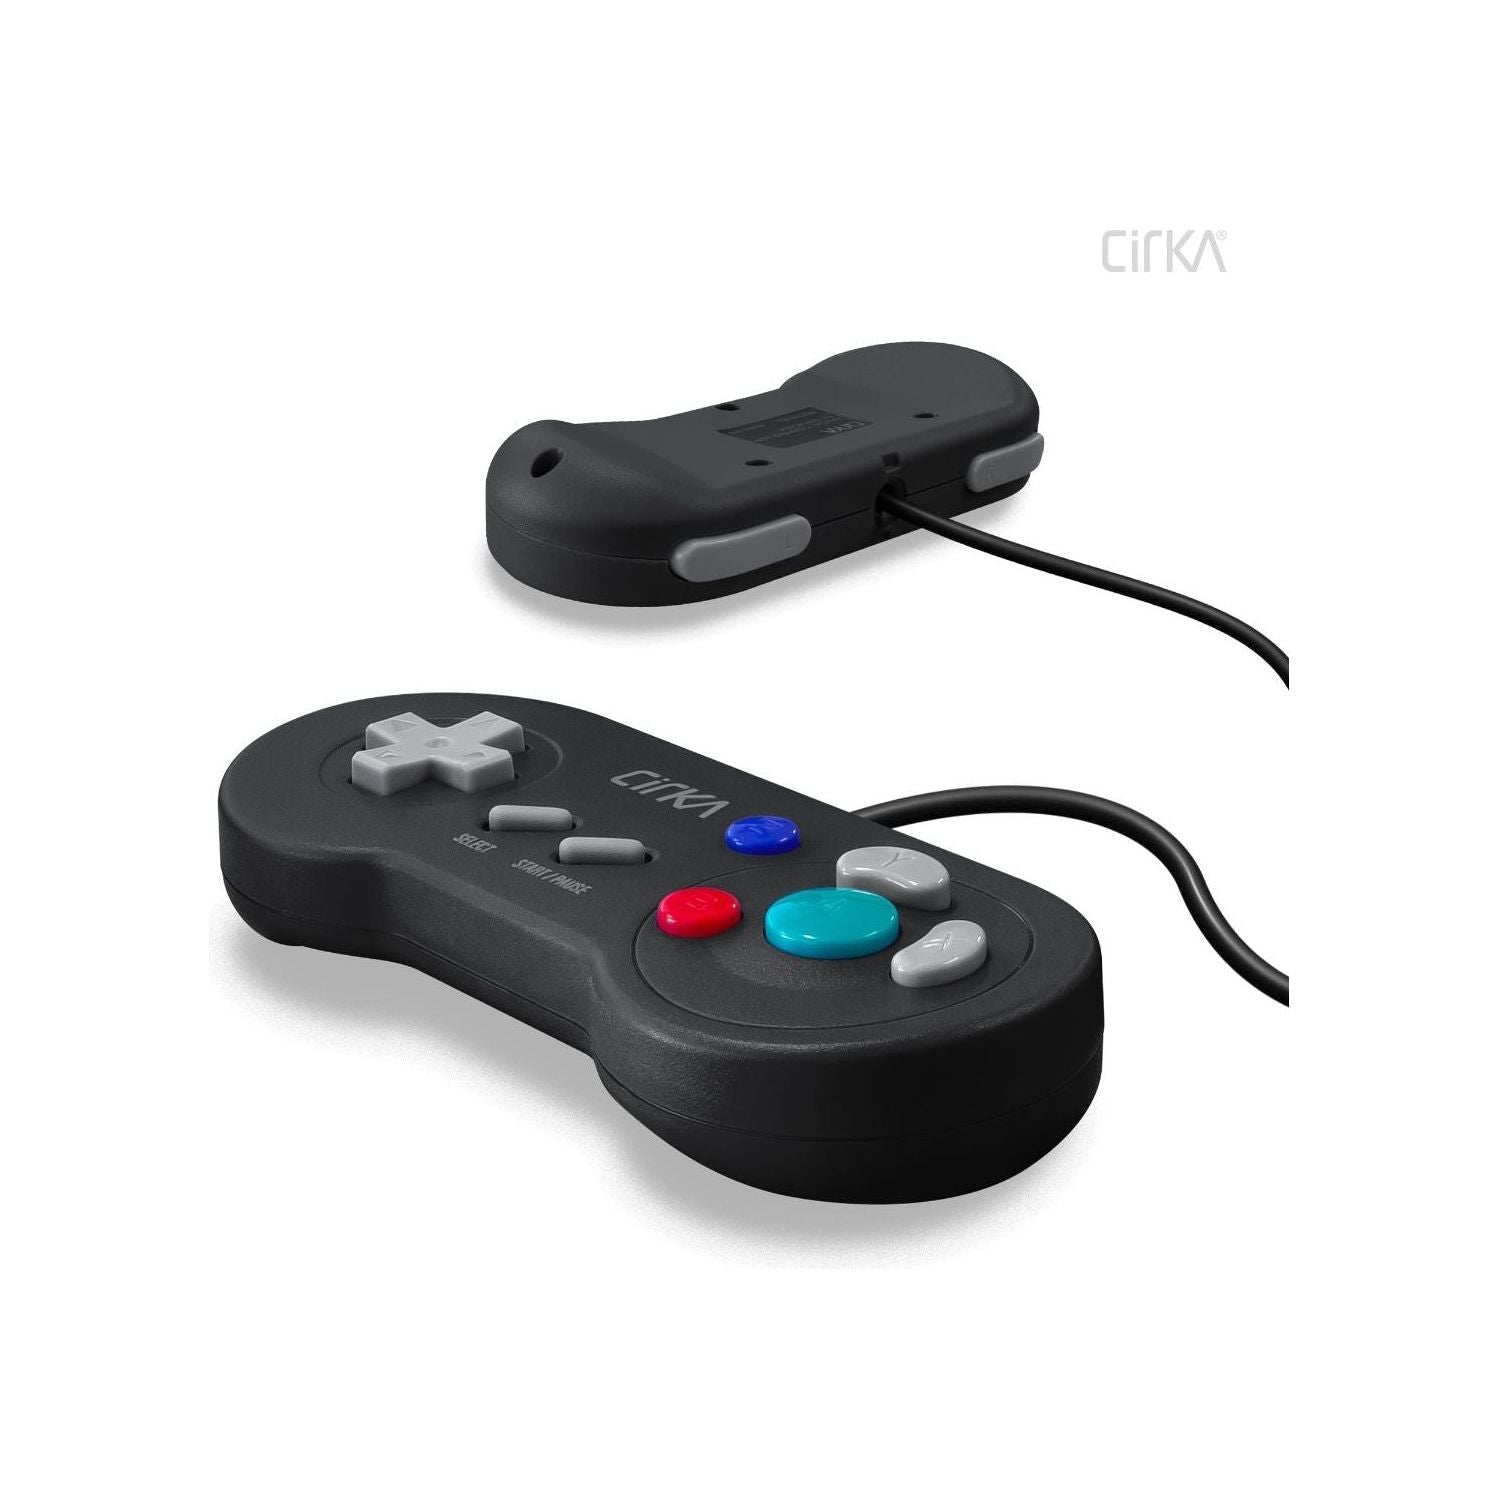 Manette numérique pour Nintendo GameCube (noir)